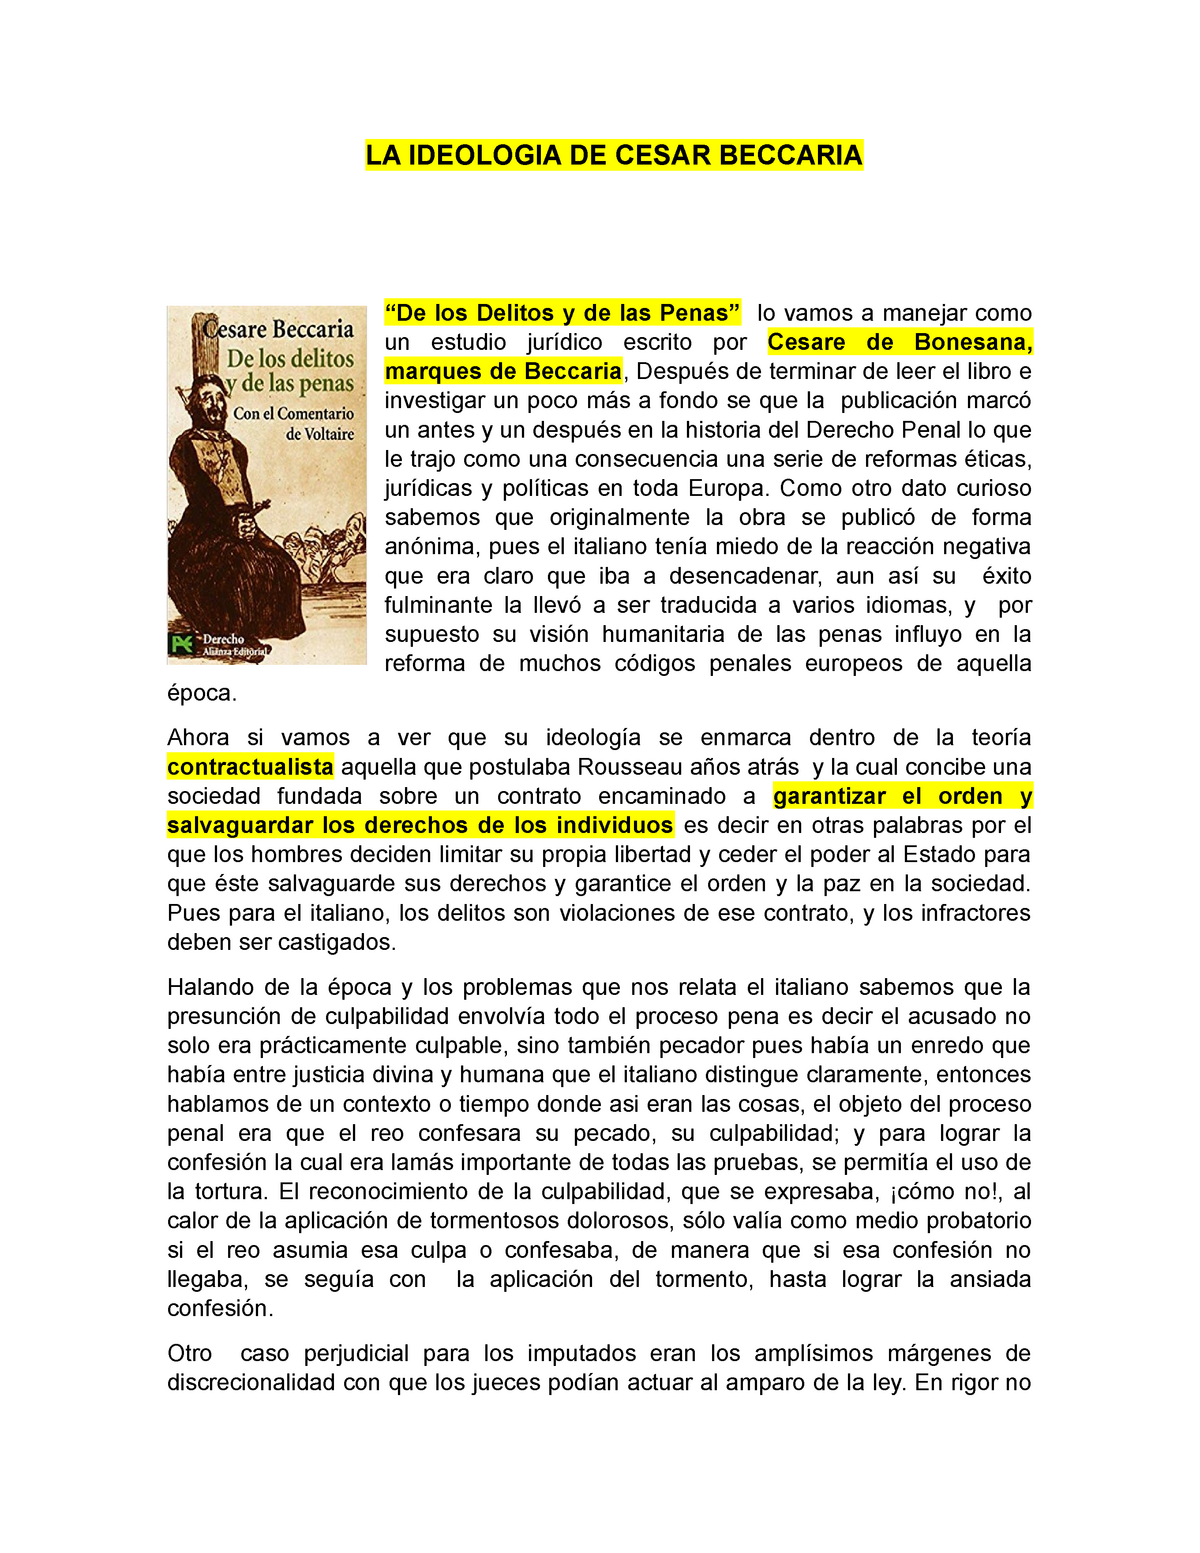 LA Ideologia DE Cesar Beccaria - LA IDEOLOGIA DE CESAR BECCARIA “De los  Delitos y de las Penas” lo - Studocu